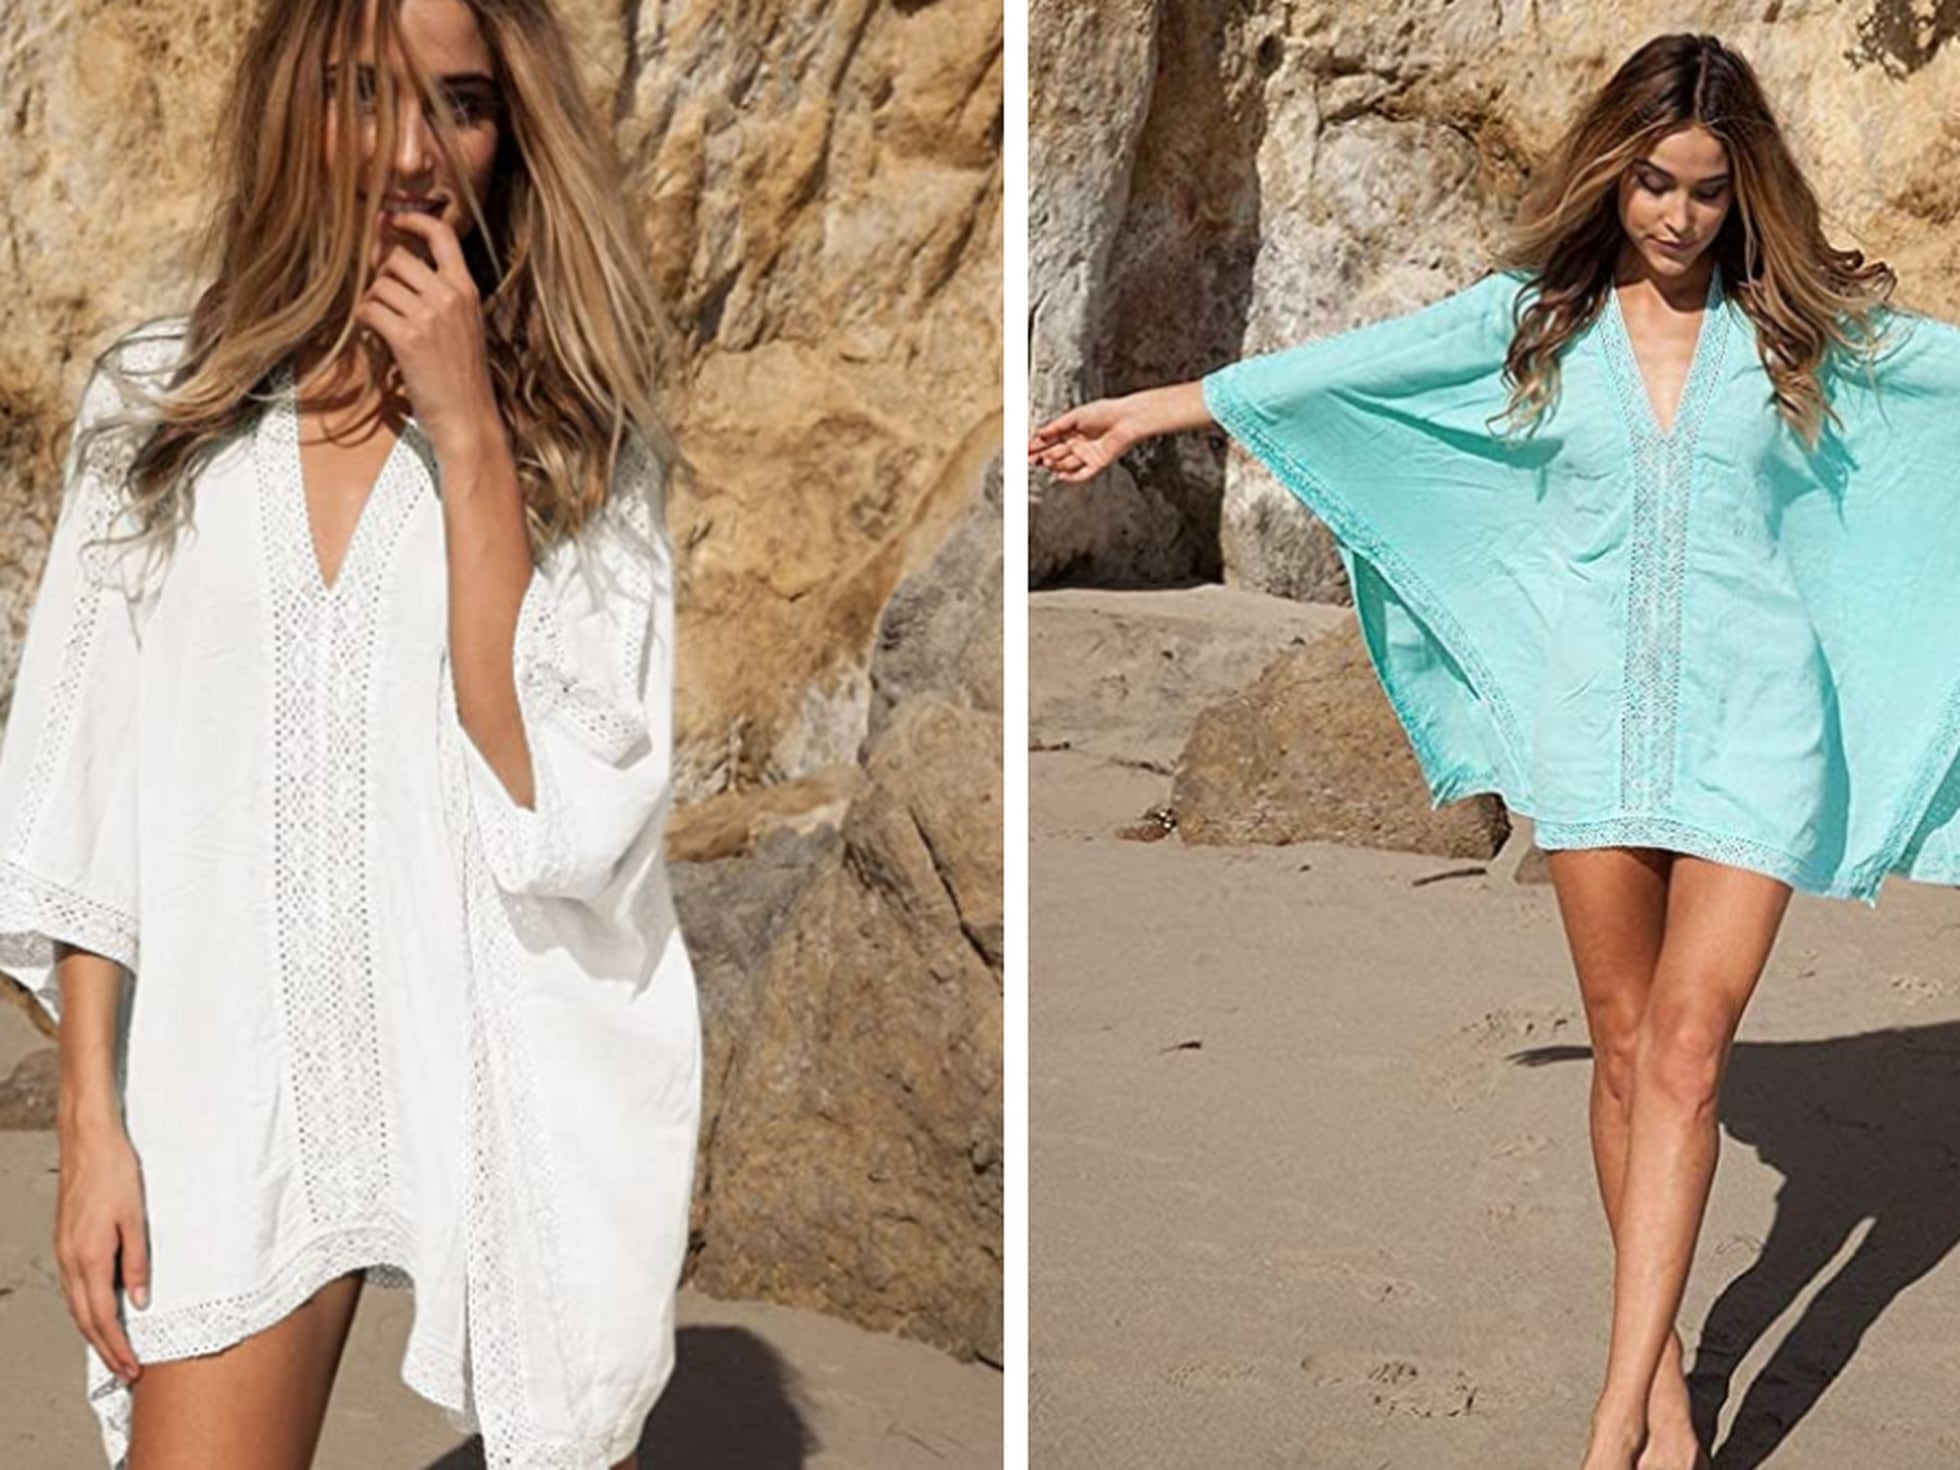 Narabar pecador Legado En seis colores y de corte holgado: así es el vestido de playa más vendido  en Amazon que se adapta a distintas tallas | Escaparate: compras y ofertas  | EL PAÍS